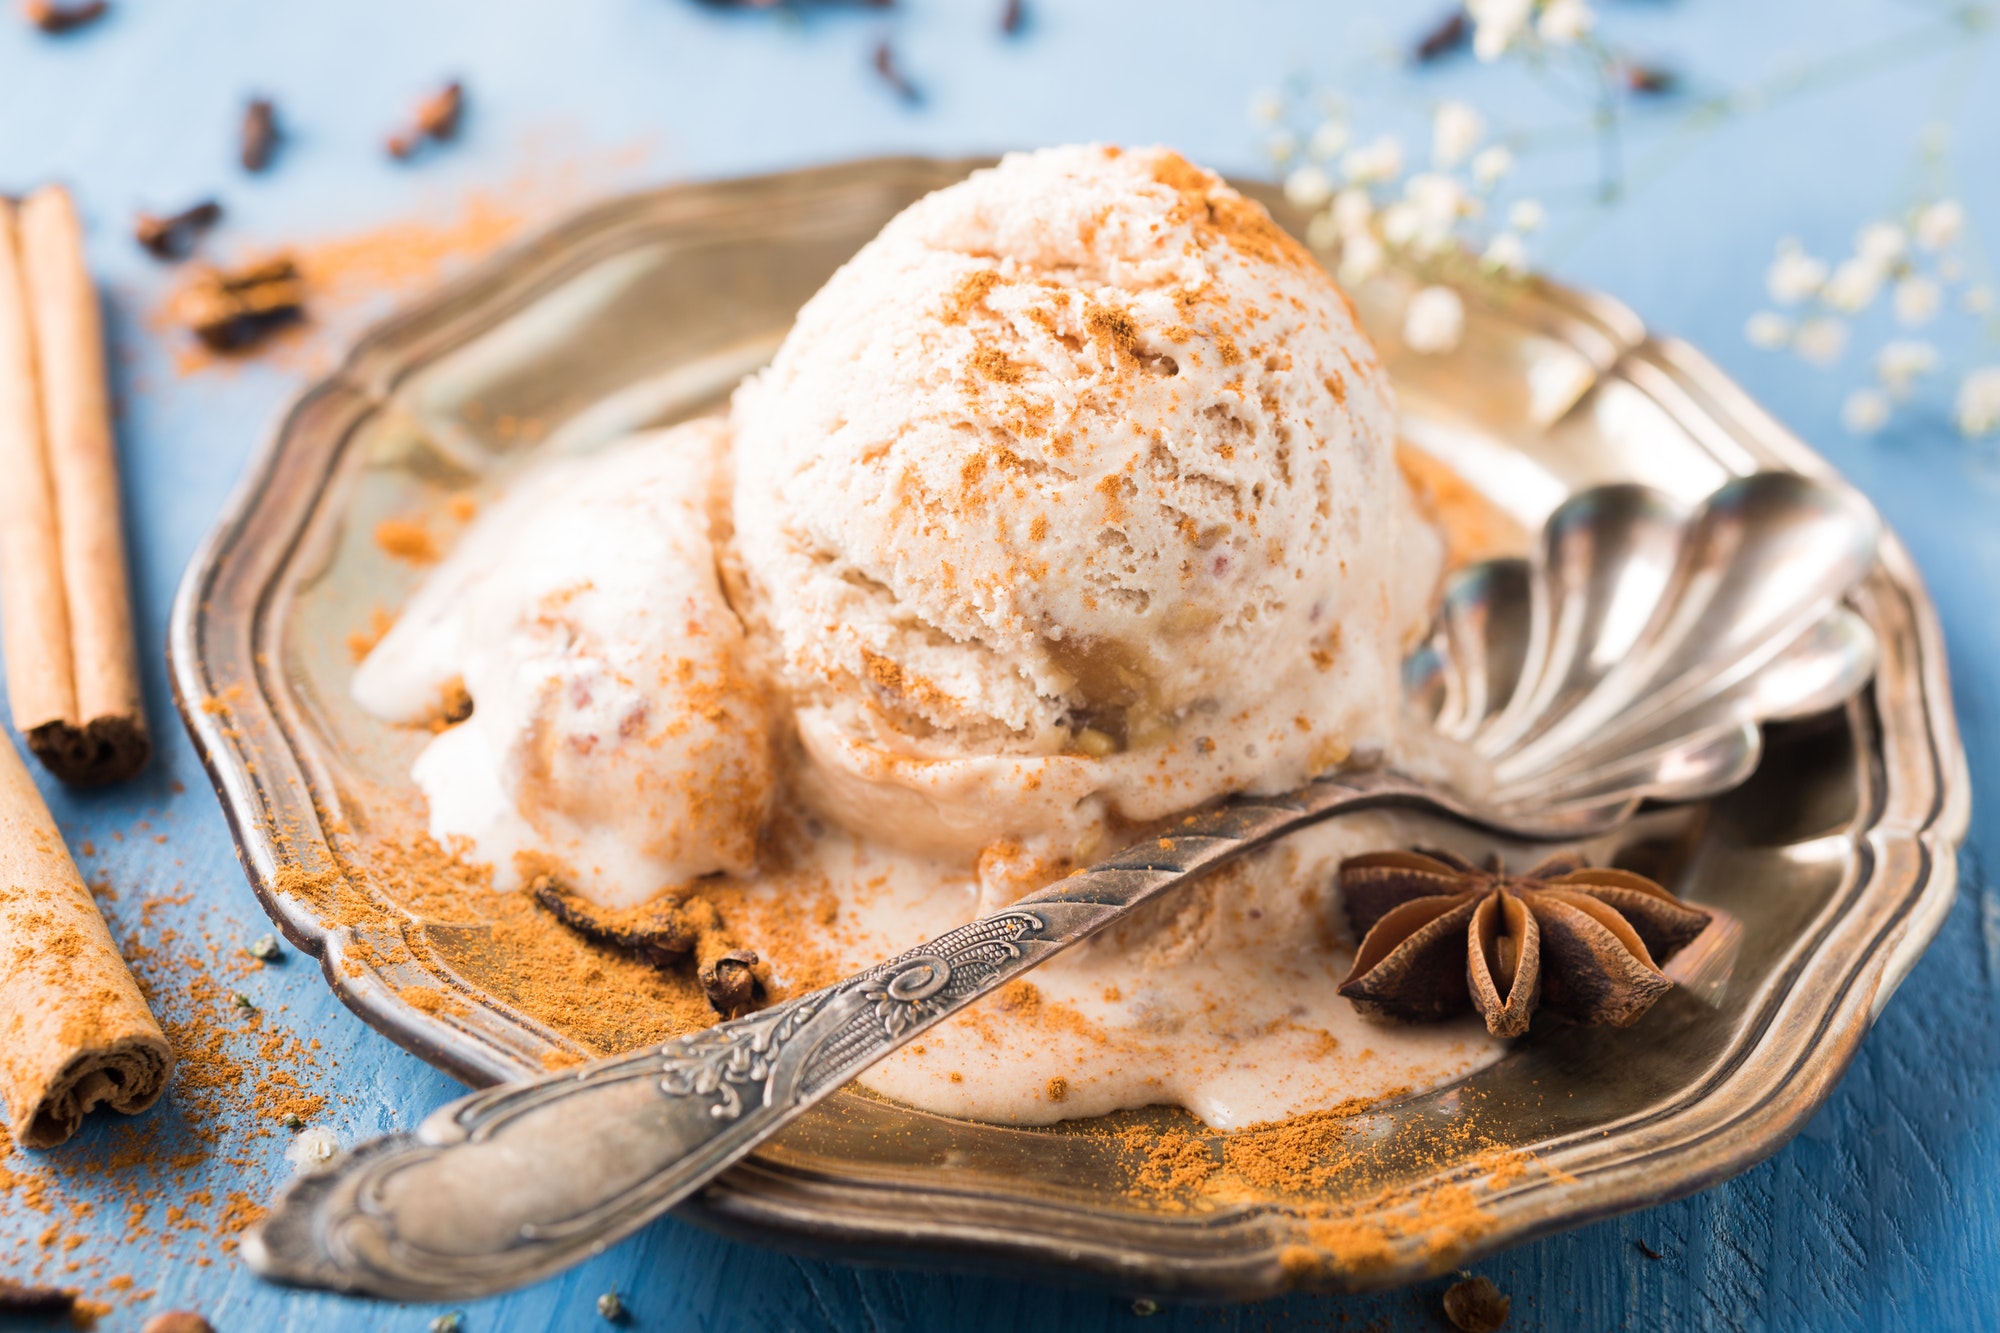 Scoop of homemade ice cream with cinnamon - ice cream vs gelato